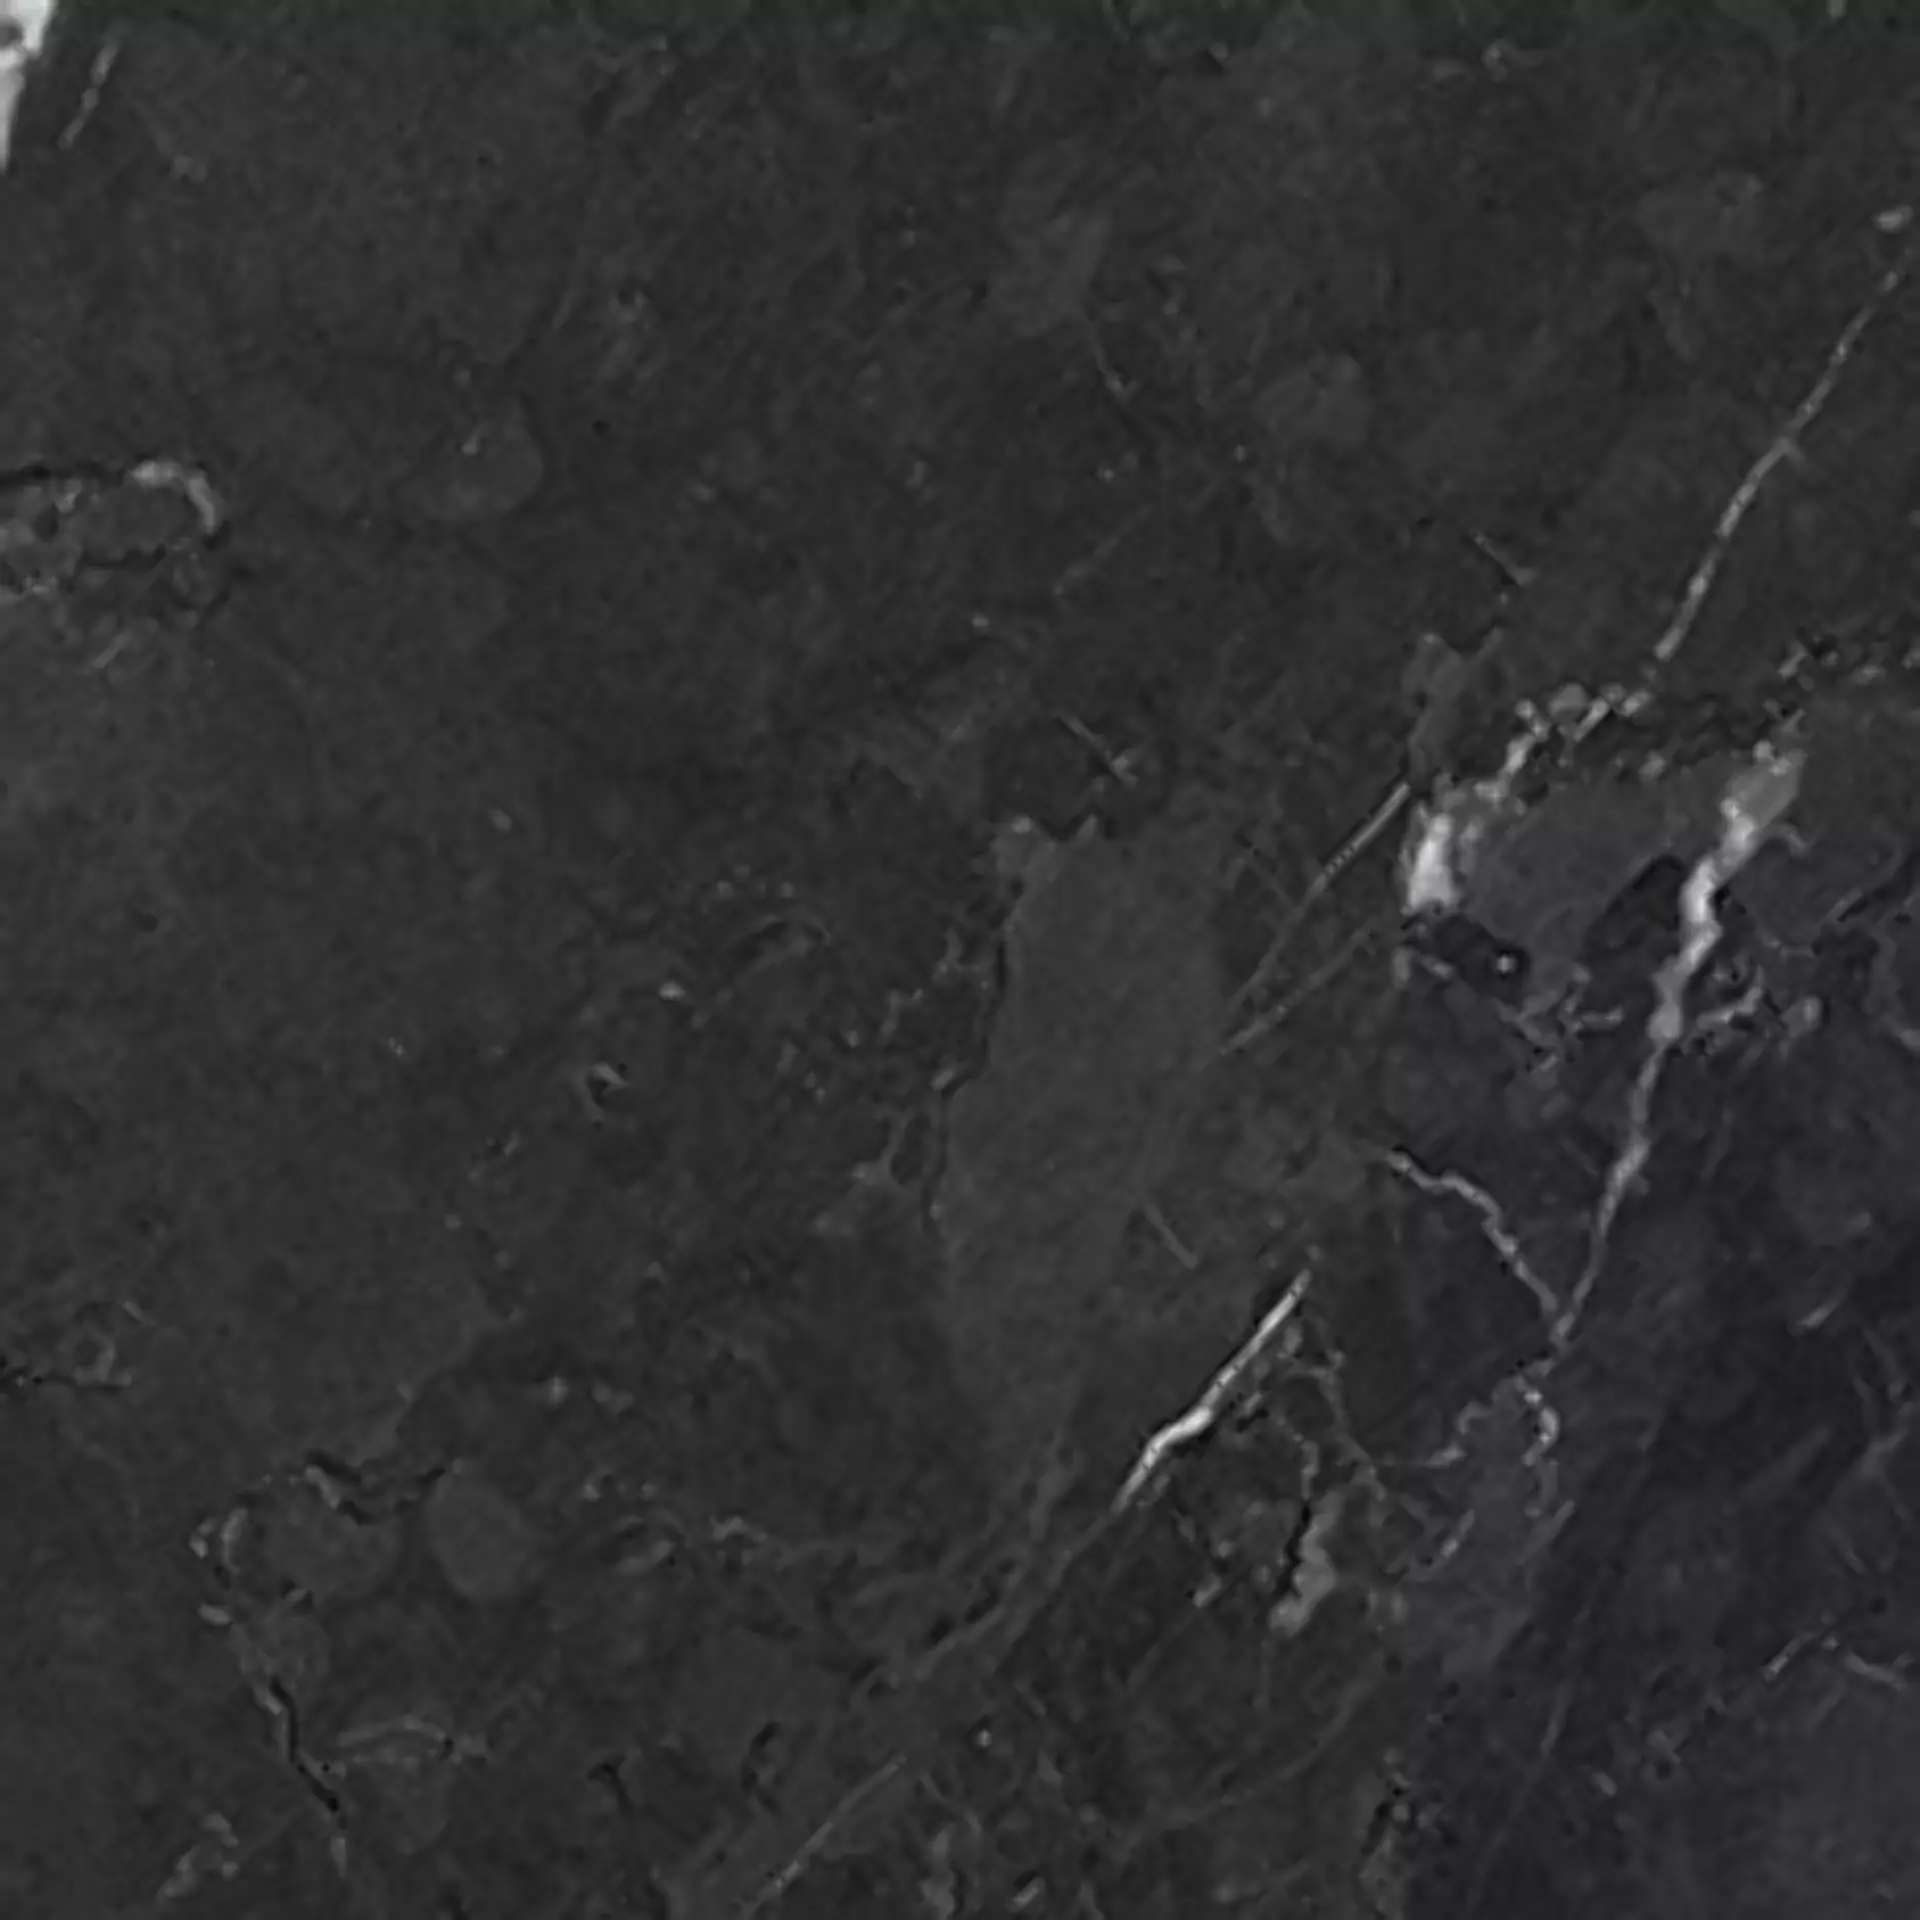 Wandfliese Villeroy & Boch Victorian Black Glossy Black 1222-MK90 glaenzend 20x20cm rektifiziert 11mm